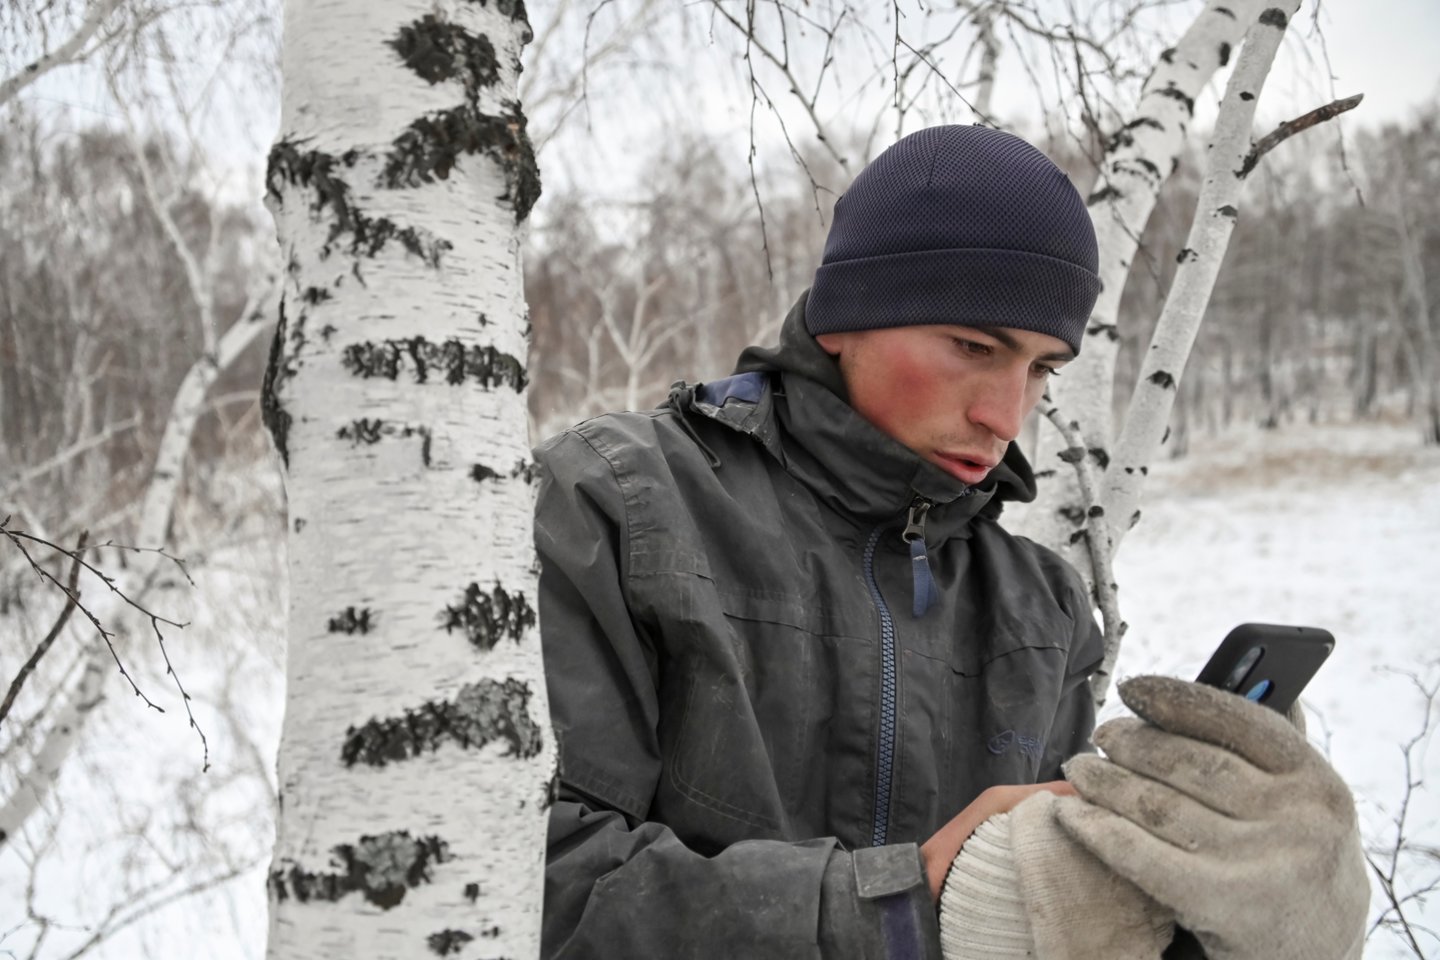  Atokiame Sibiro kaime valdžia pastatė interneto bokštą po to, kai vietinis studentas išpopuliarėjo lipdamas į medį tam, kad galėtų dalyvauti „Zoom“ paskaitose.  <br> Reuters/Scanpix nuotr.